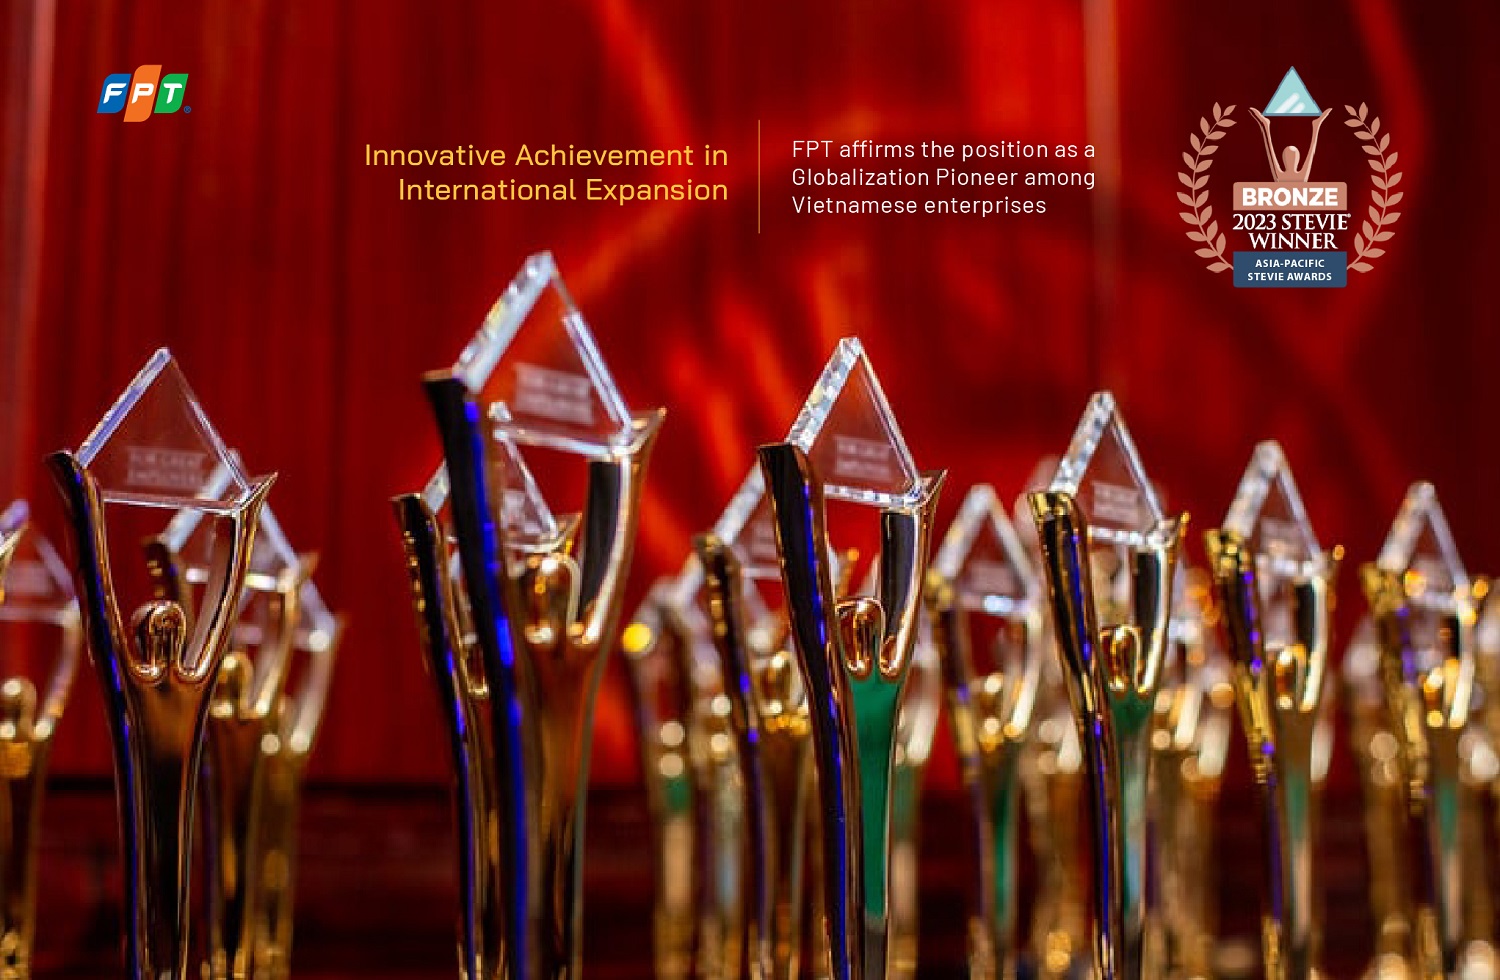 Tiên phong toàn cầu hóa FPT được vinh danh tại Asia Paciffic Stieve Awards 2023